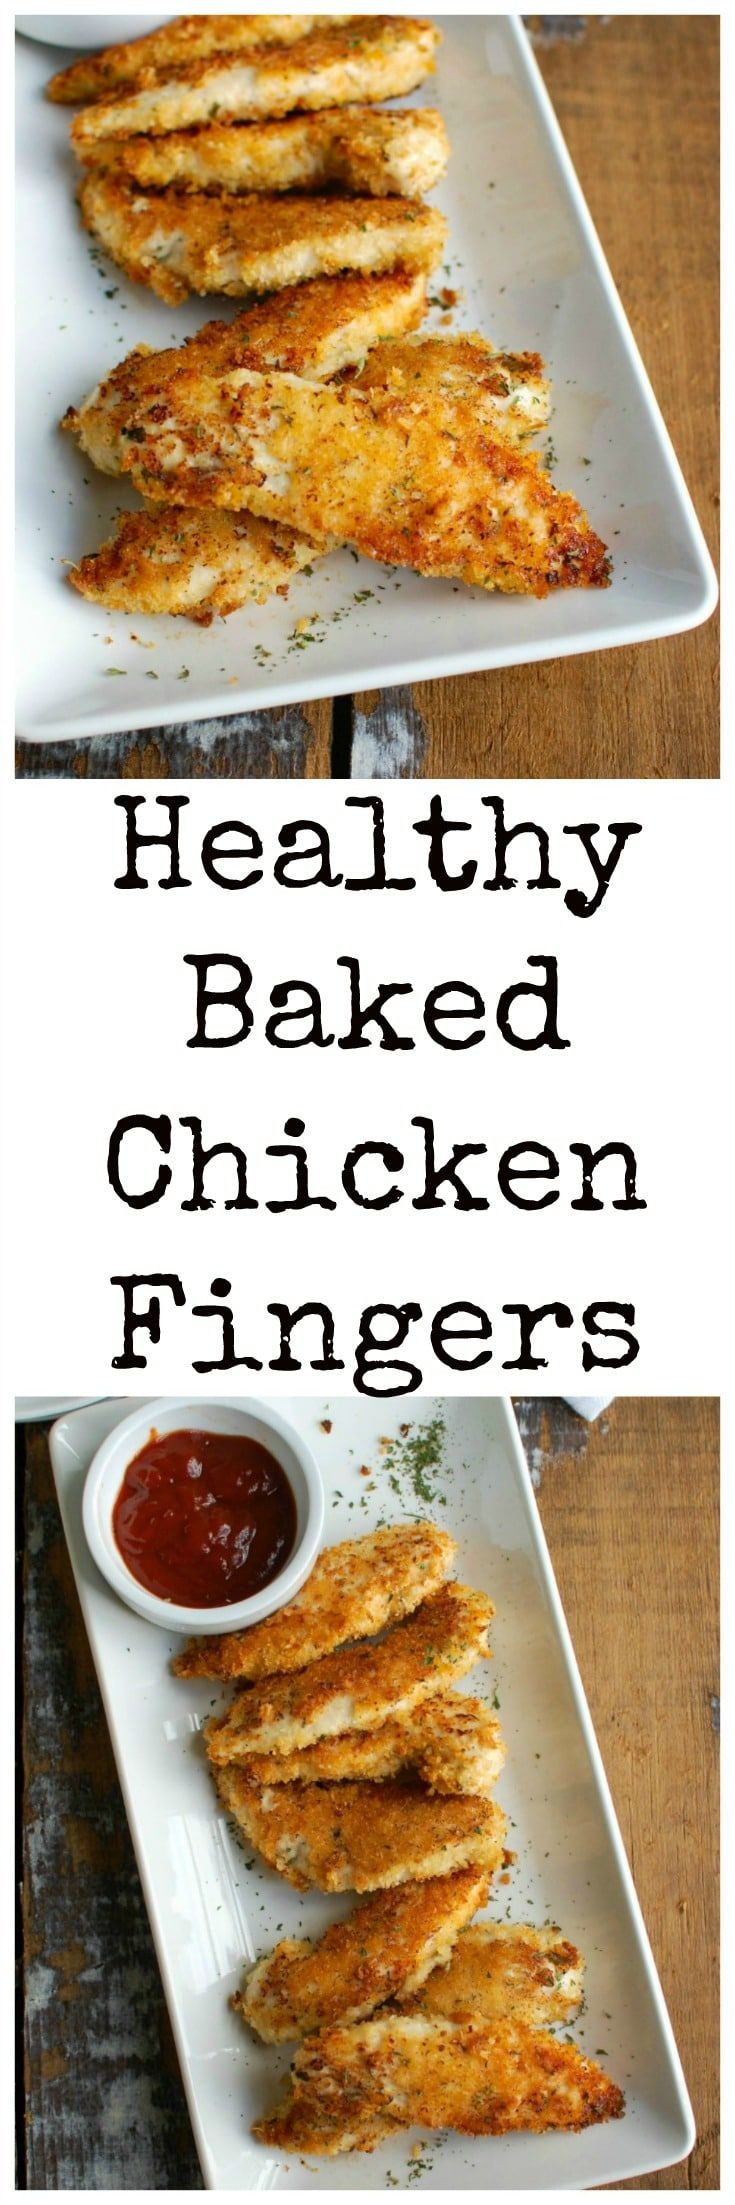 Baked Chicken Healthy
 De 25 bedste idéer inden for Chicken finger recipes på